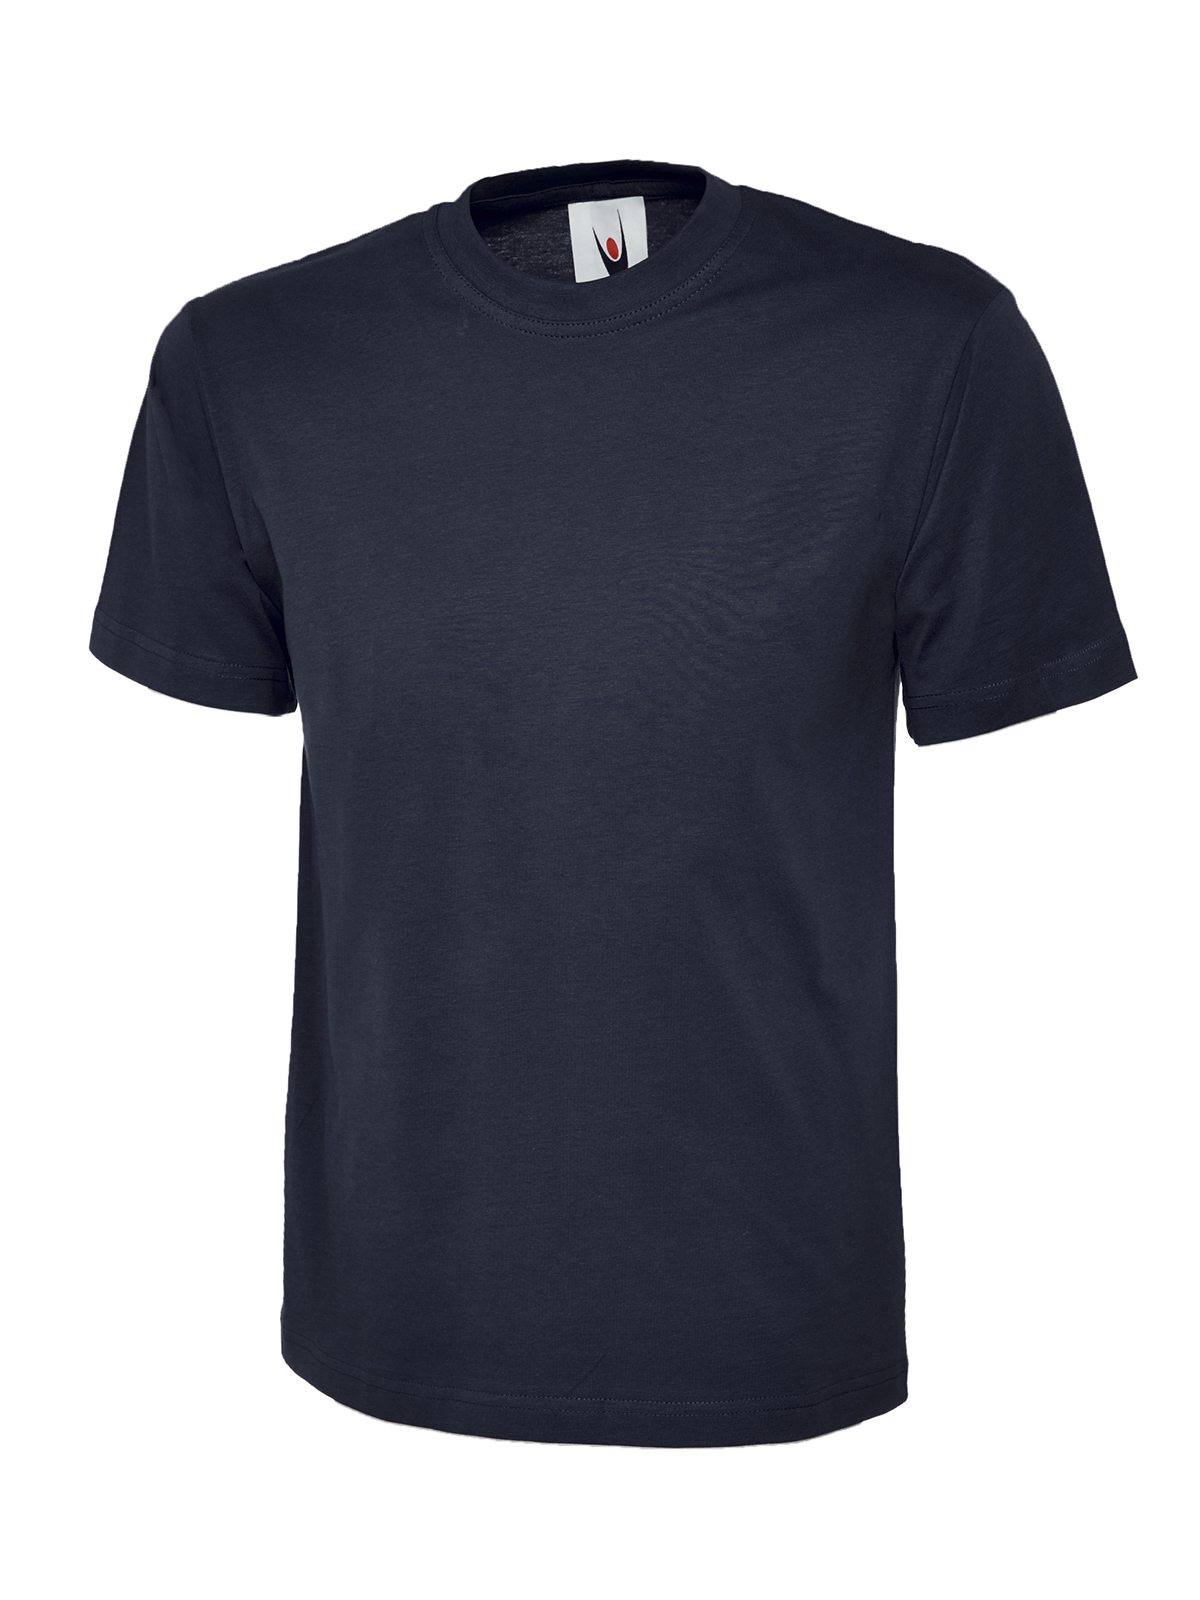 Uneek Herren T-Shirt Classic, Marineblau